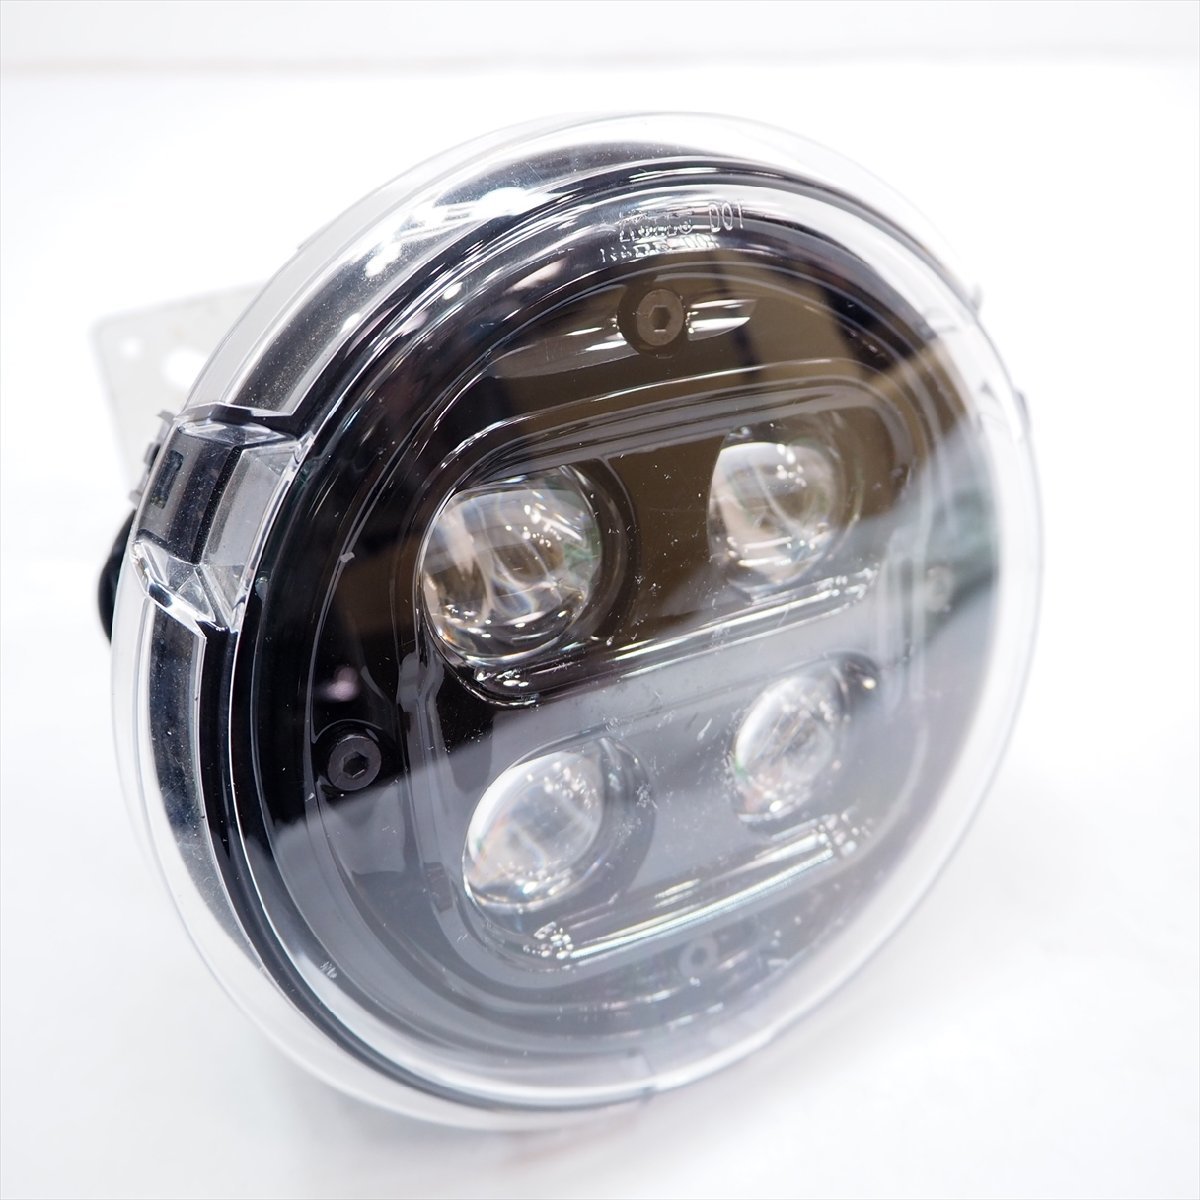 レブル250 MC49 20-22年 純正LEDプロジェクター ヘッドライト ヘッドランプ ライト ランプ